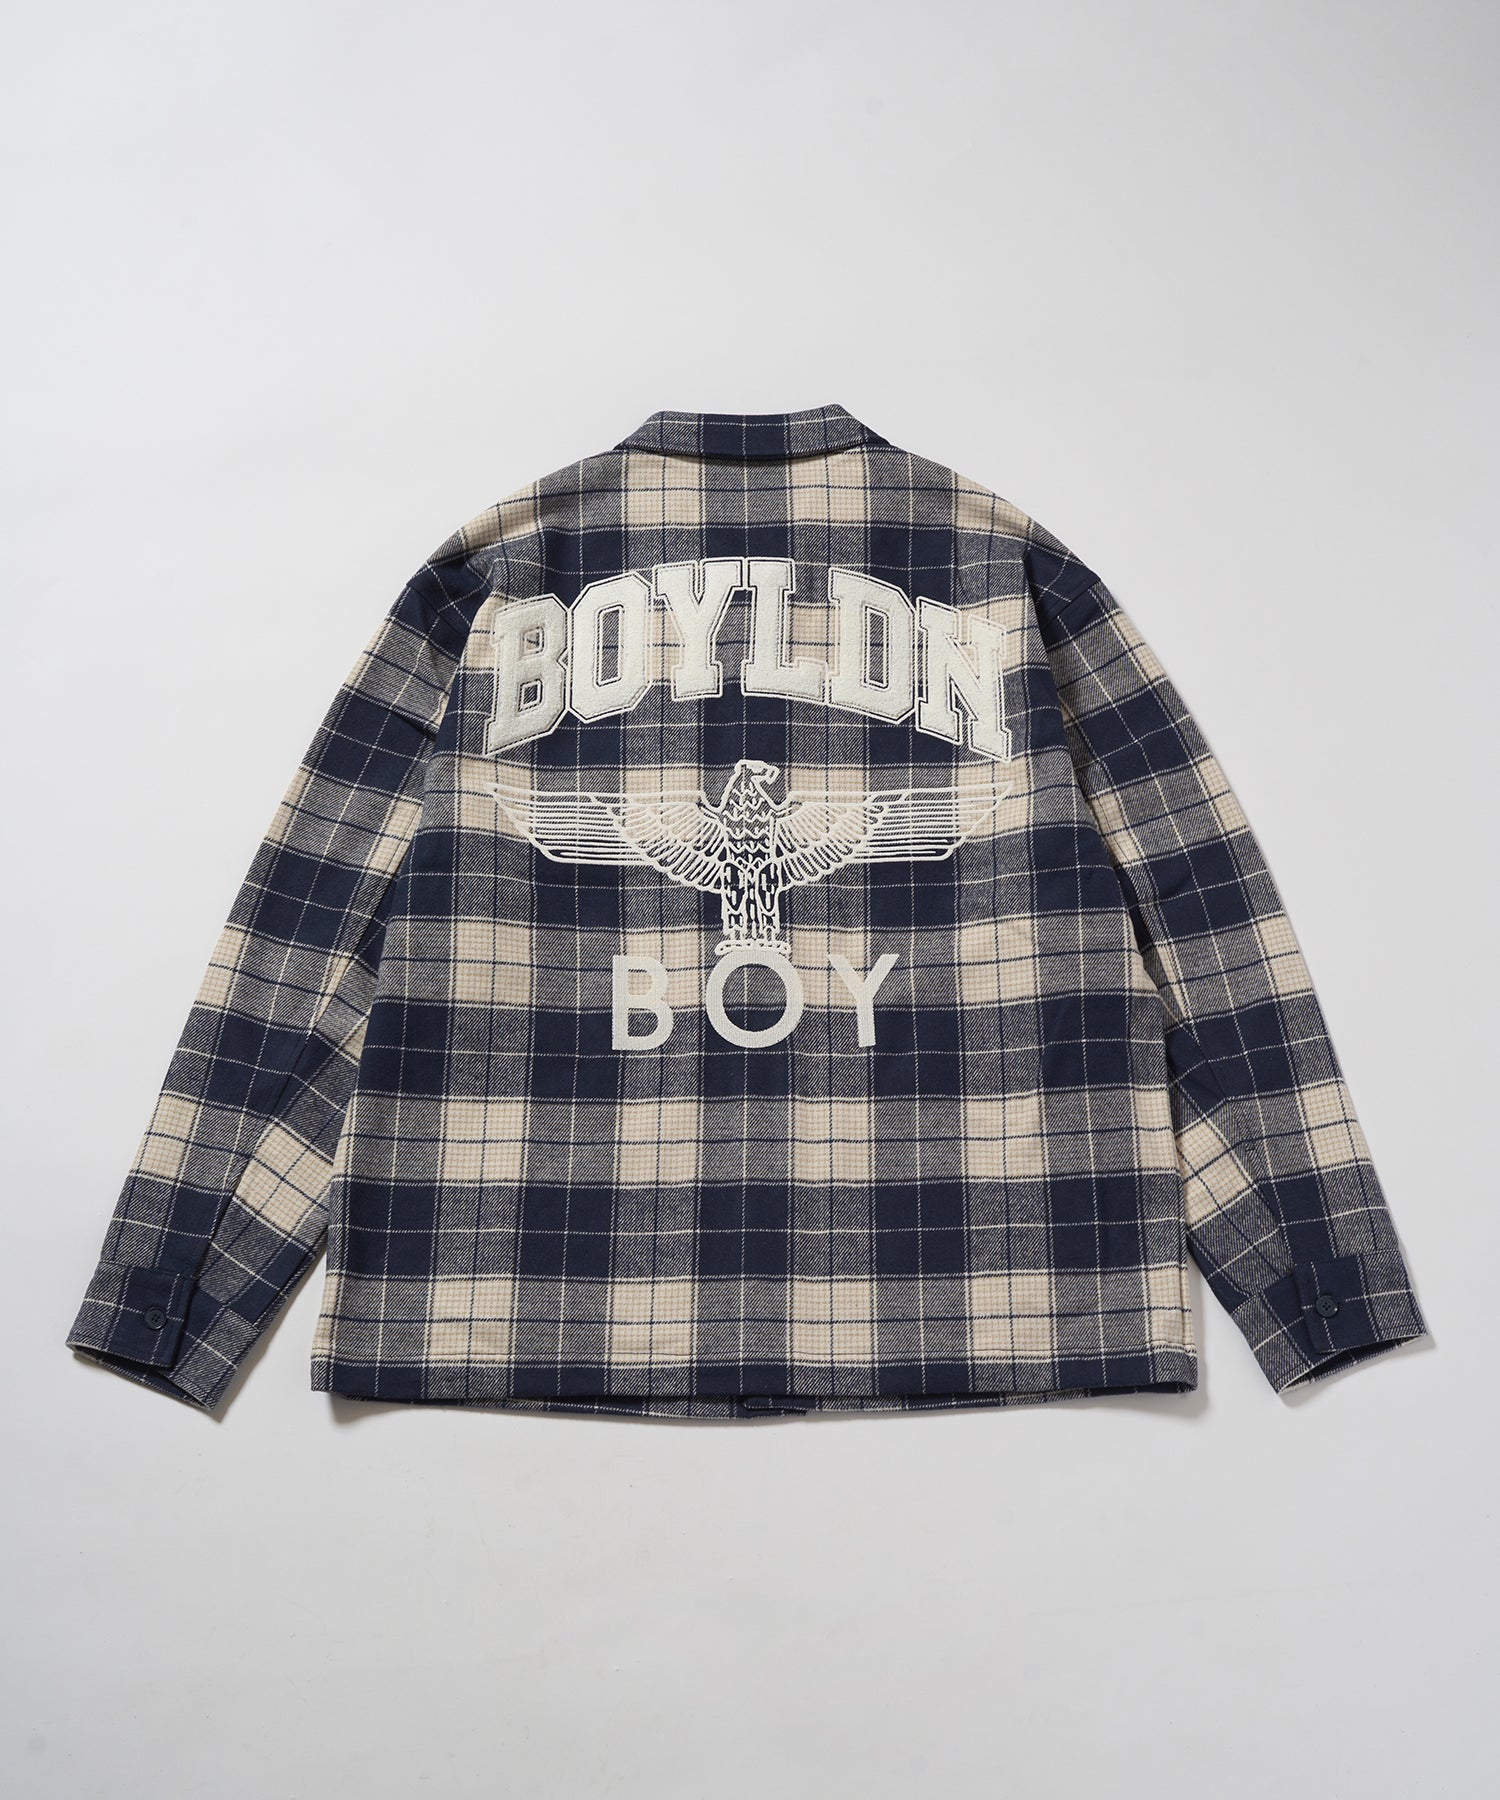 BOY LOGO Check Coveralls Shirt NAVY【B233N2302216】 – BOY LONDON